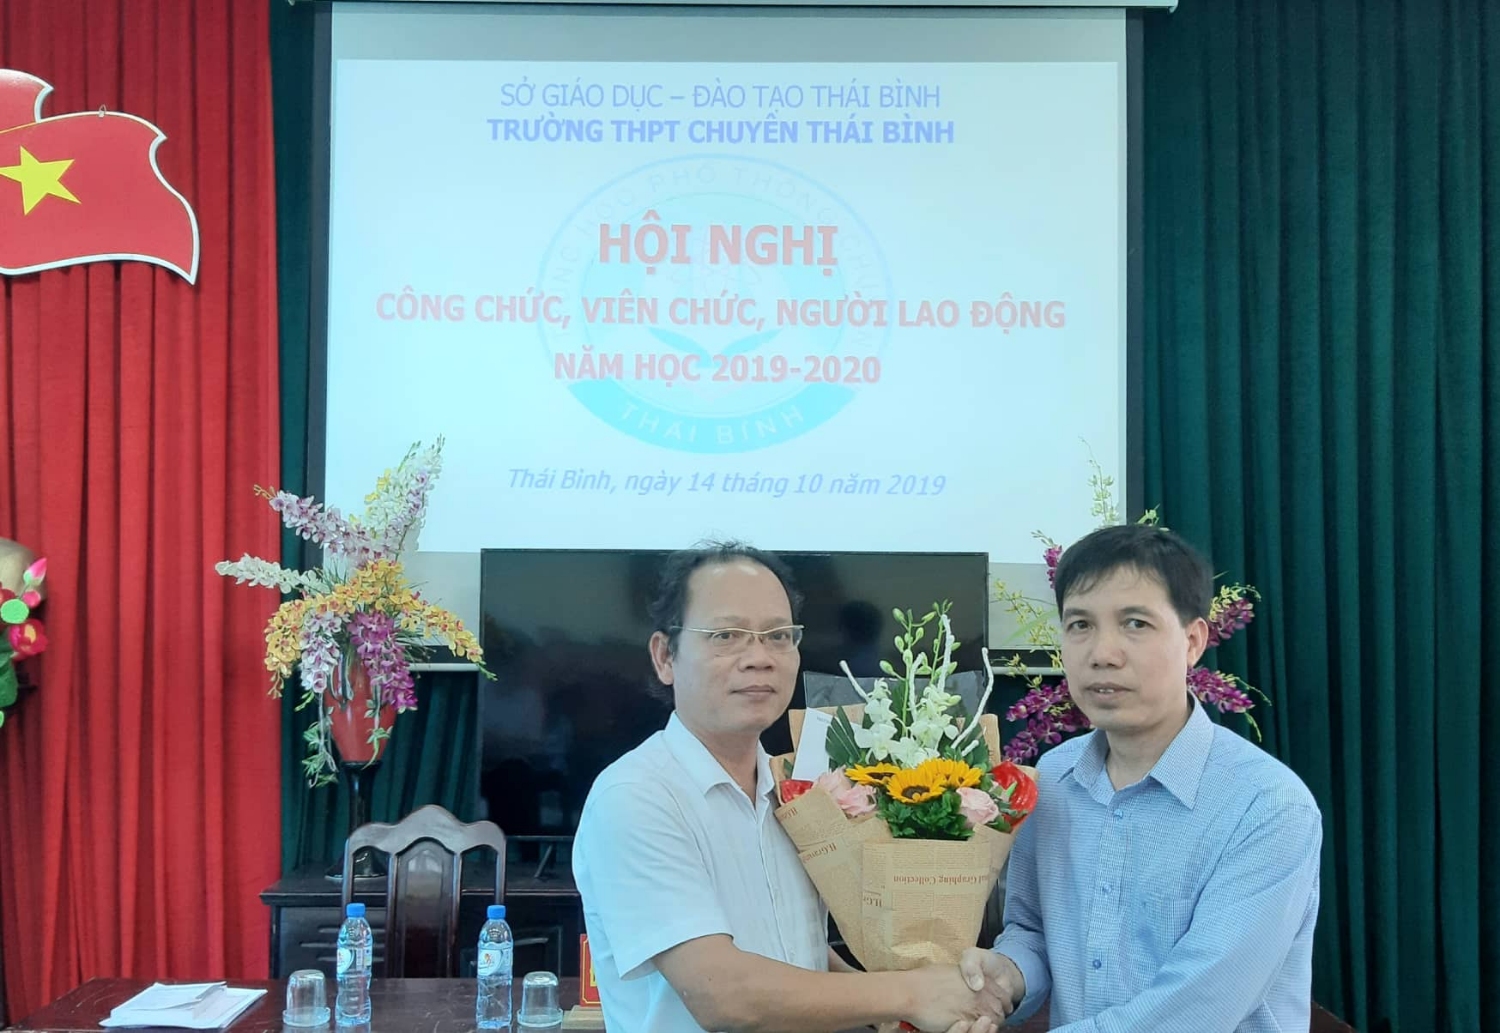 Bác Lê Trung Kiên, Hội trưởng Hội Phụ huỵnh học sinh trường cũng có mặt để chúc mừng Hội nghị.